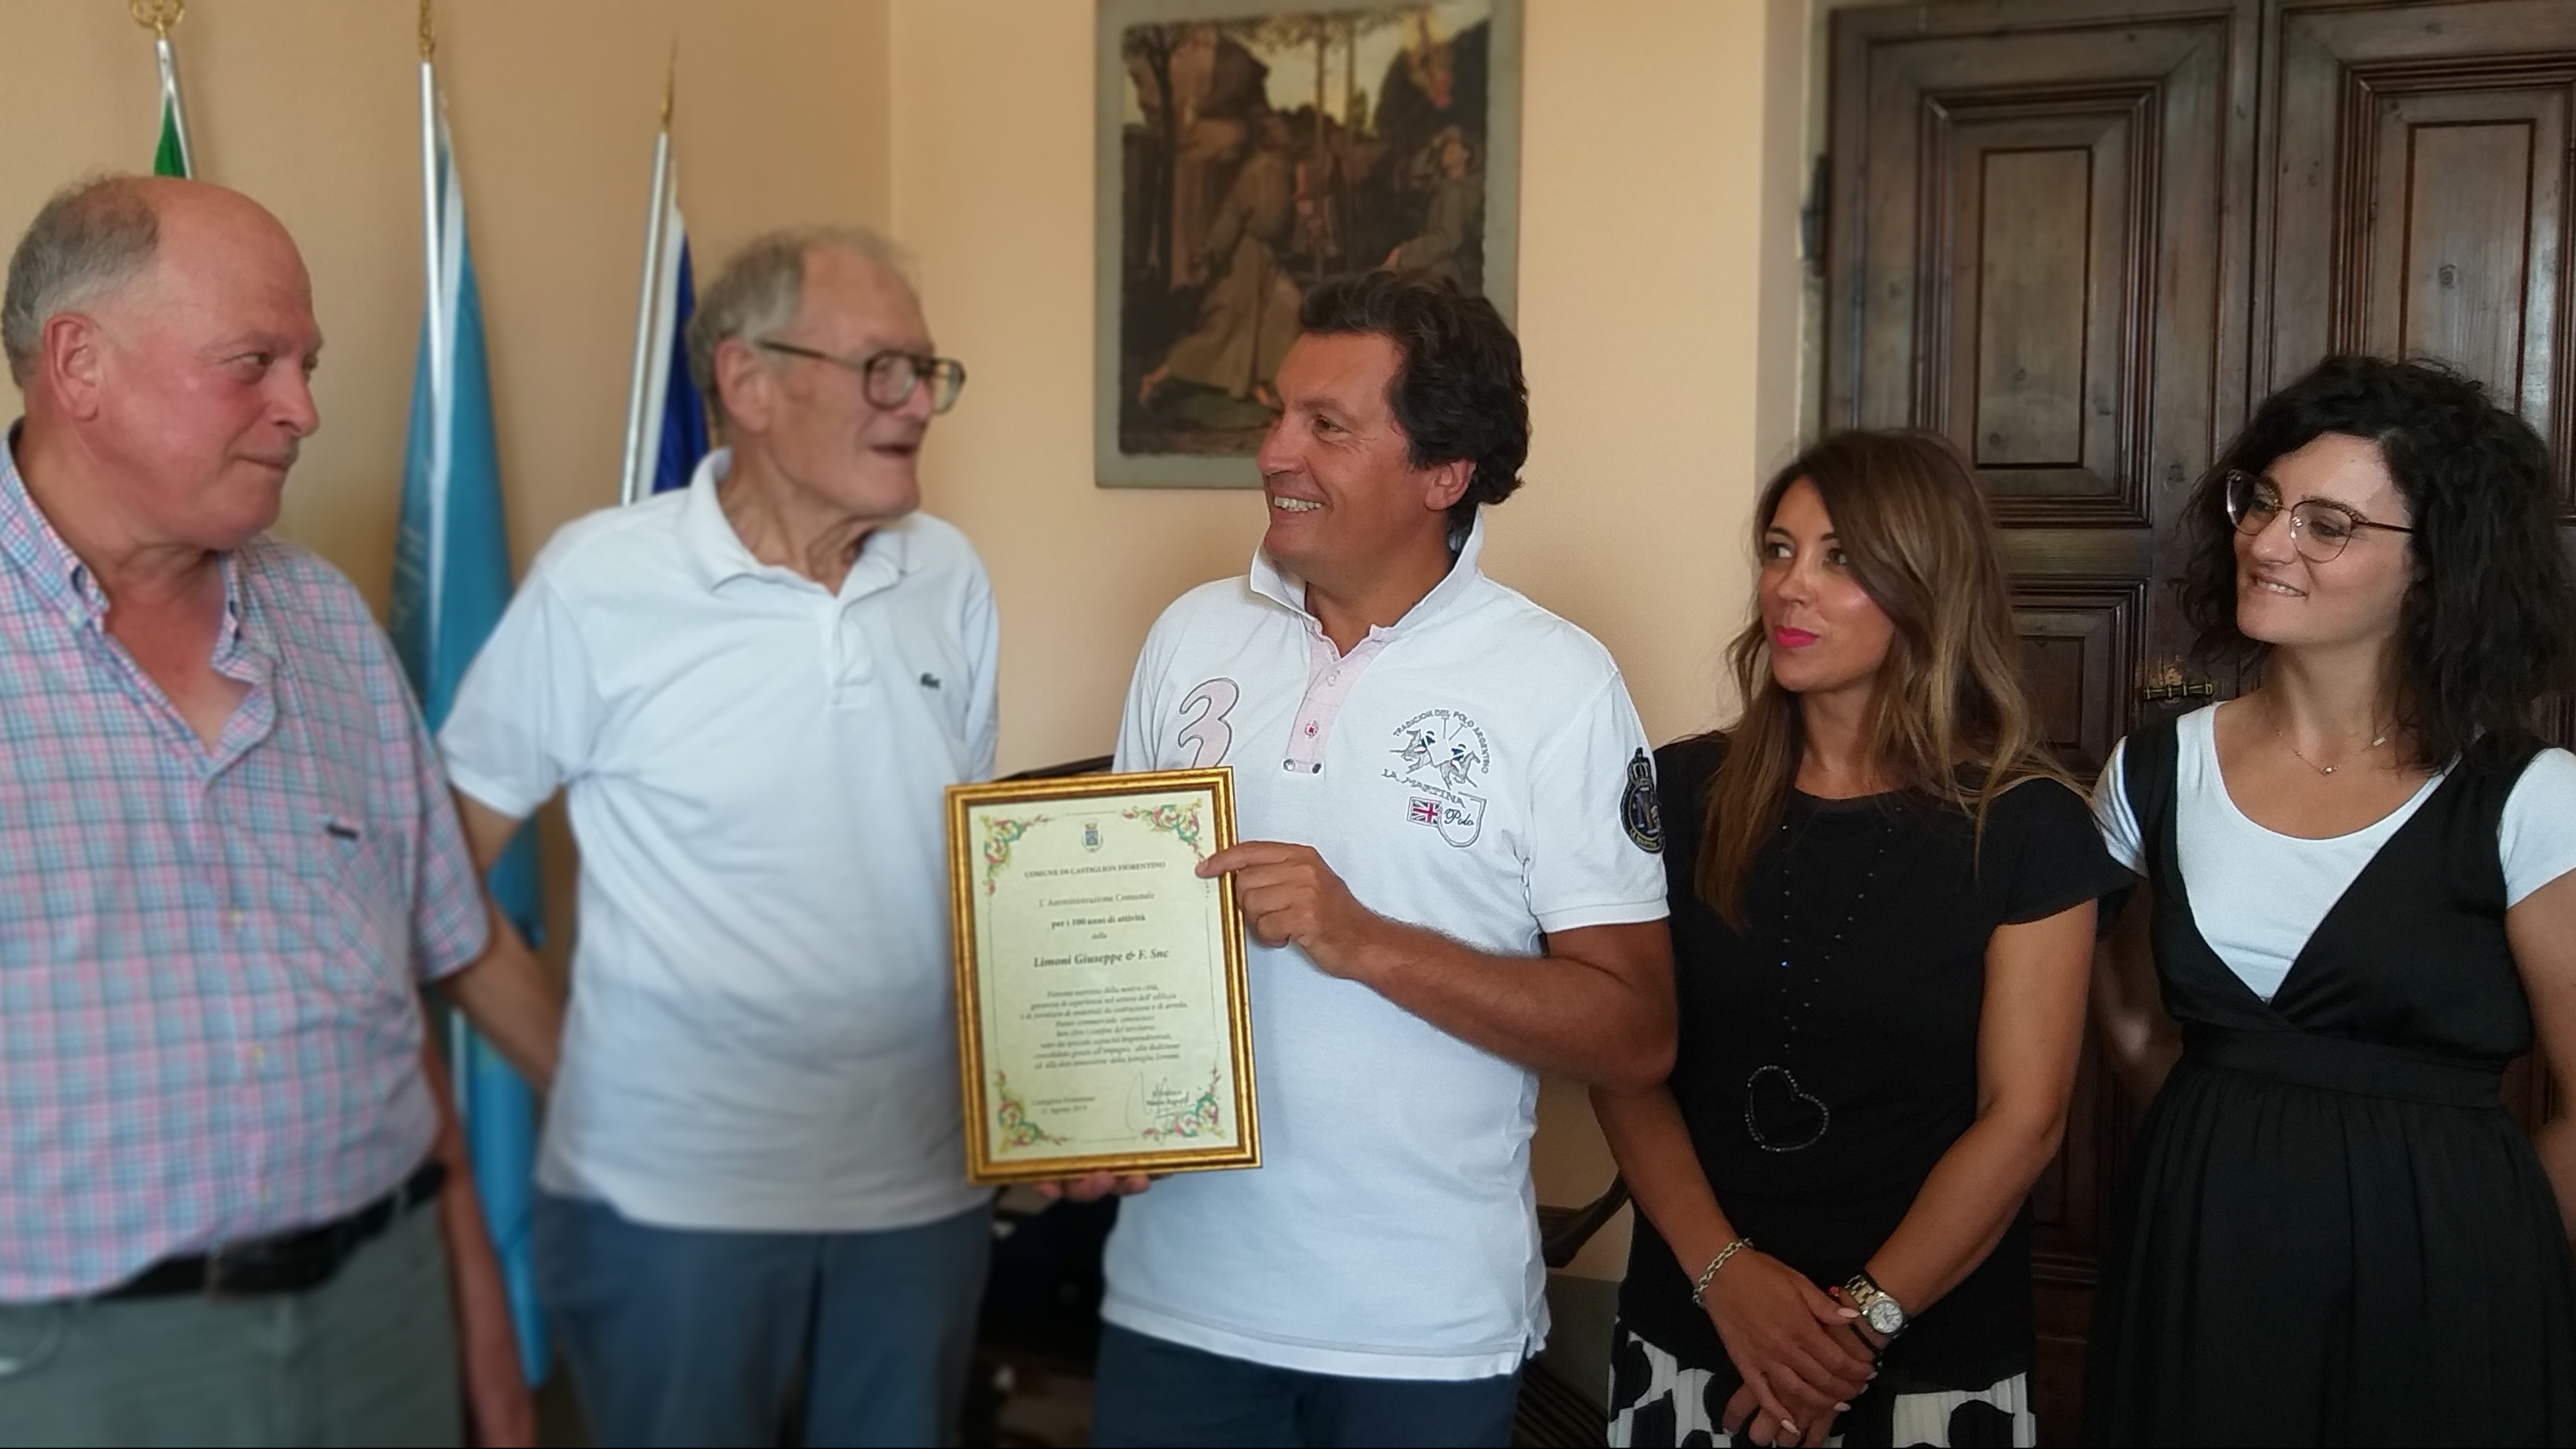 Una pergamena a ricordo dei “primi” 100 anni di attività è stata consegnata dal sindaco Agnelli alla famiglia Limoni.